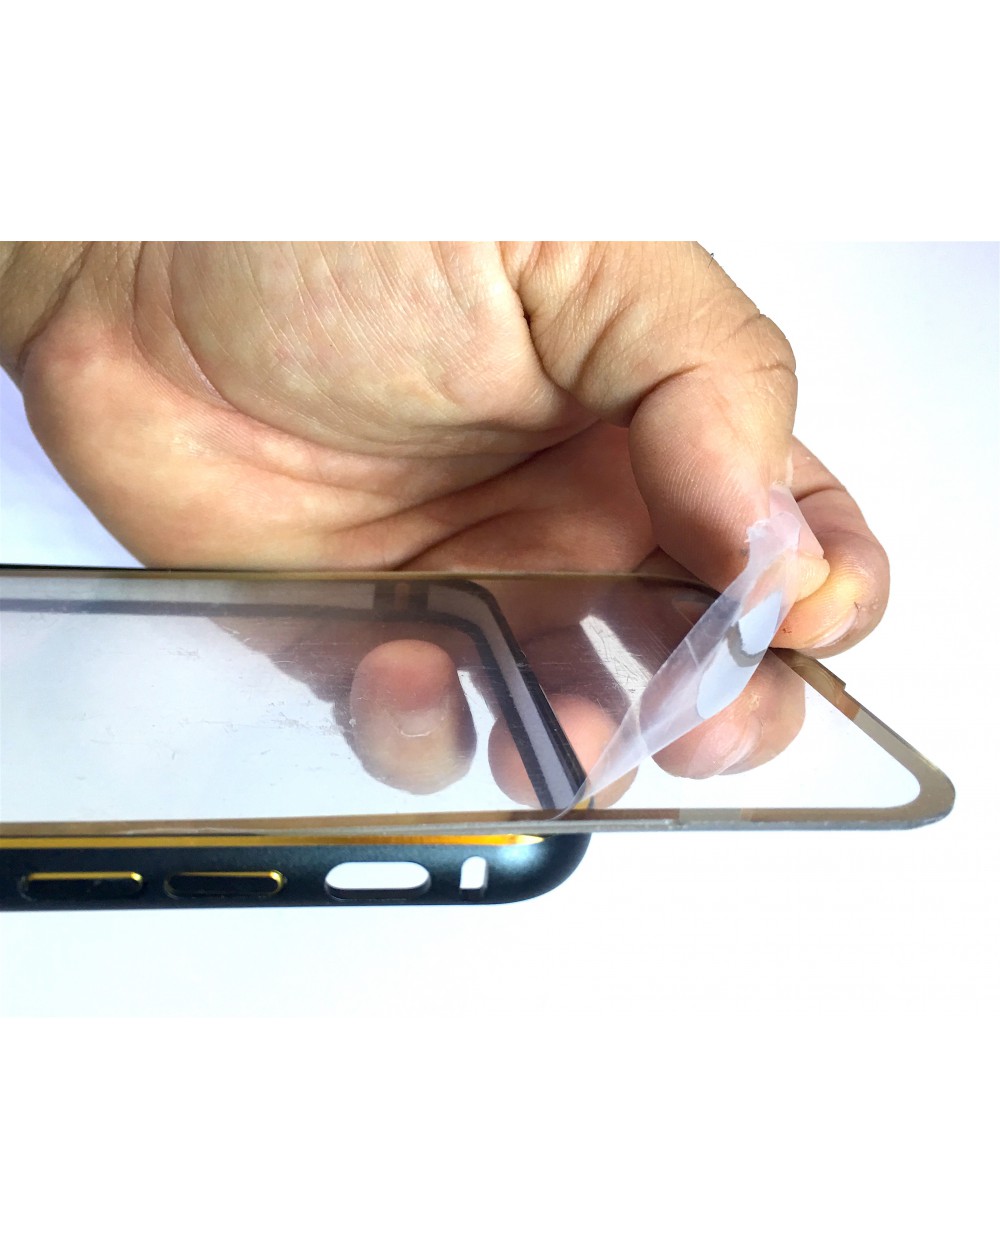 Bumper Metal y protector trasero iPhone 6